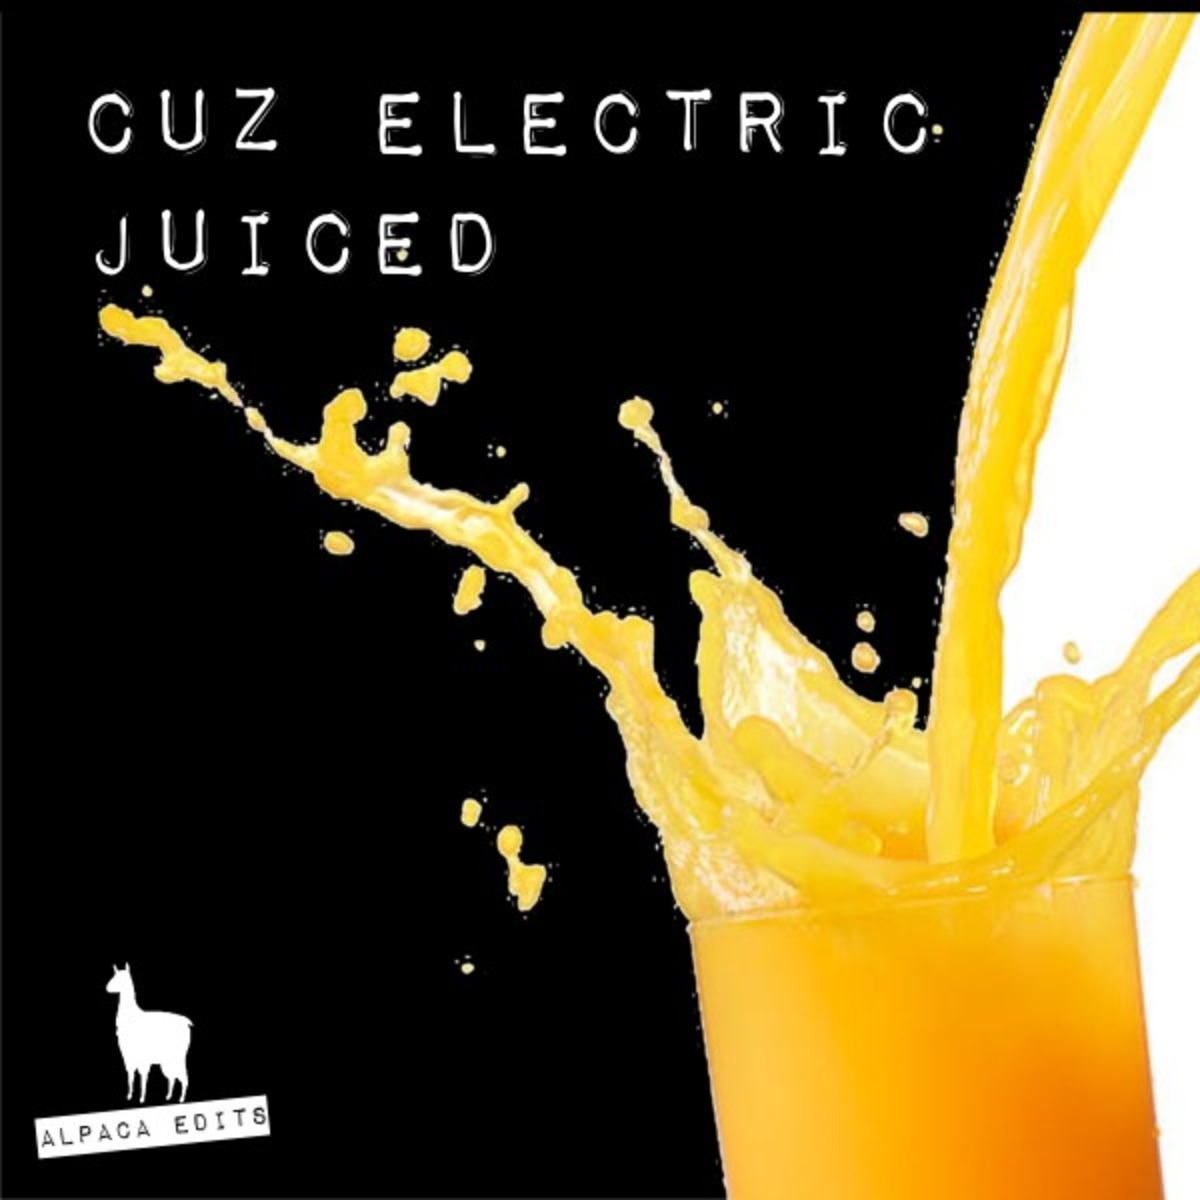 Cuz Electric - Juiced / Alpaca Edits